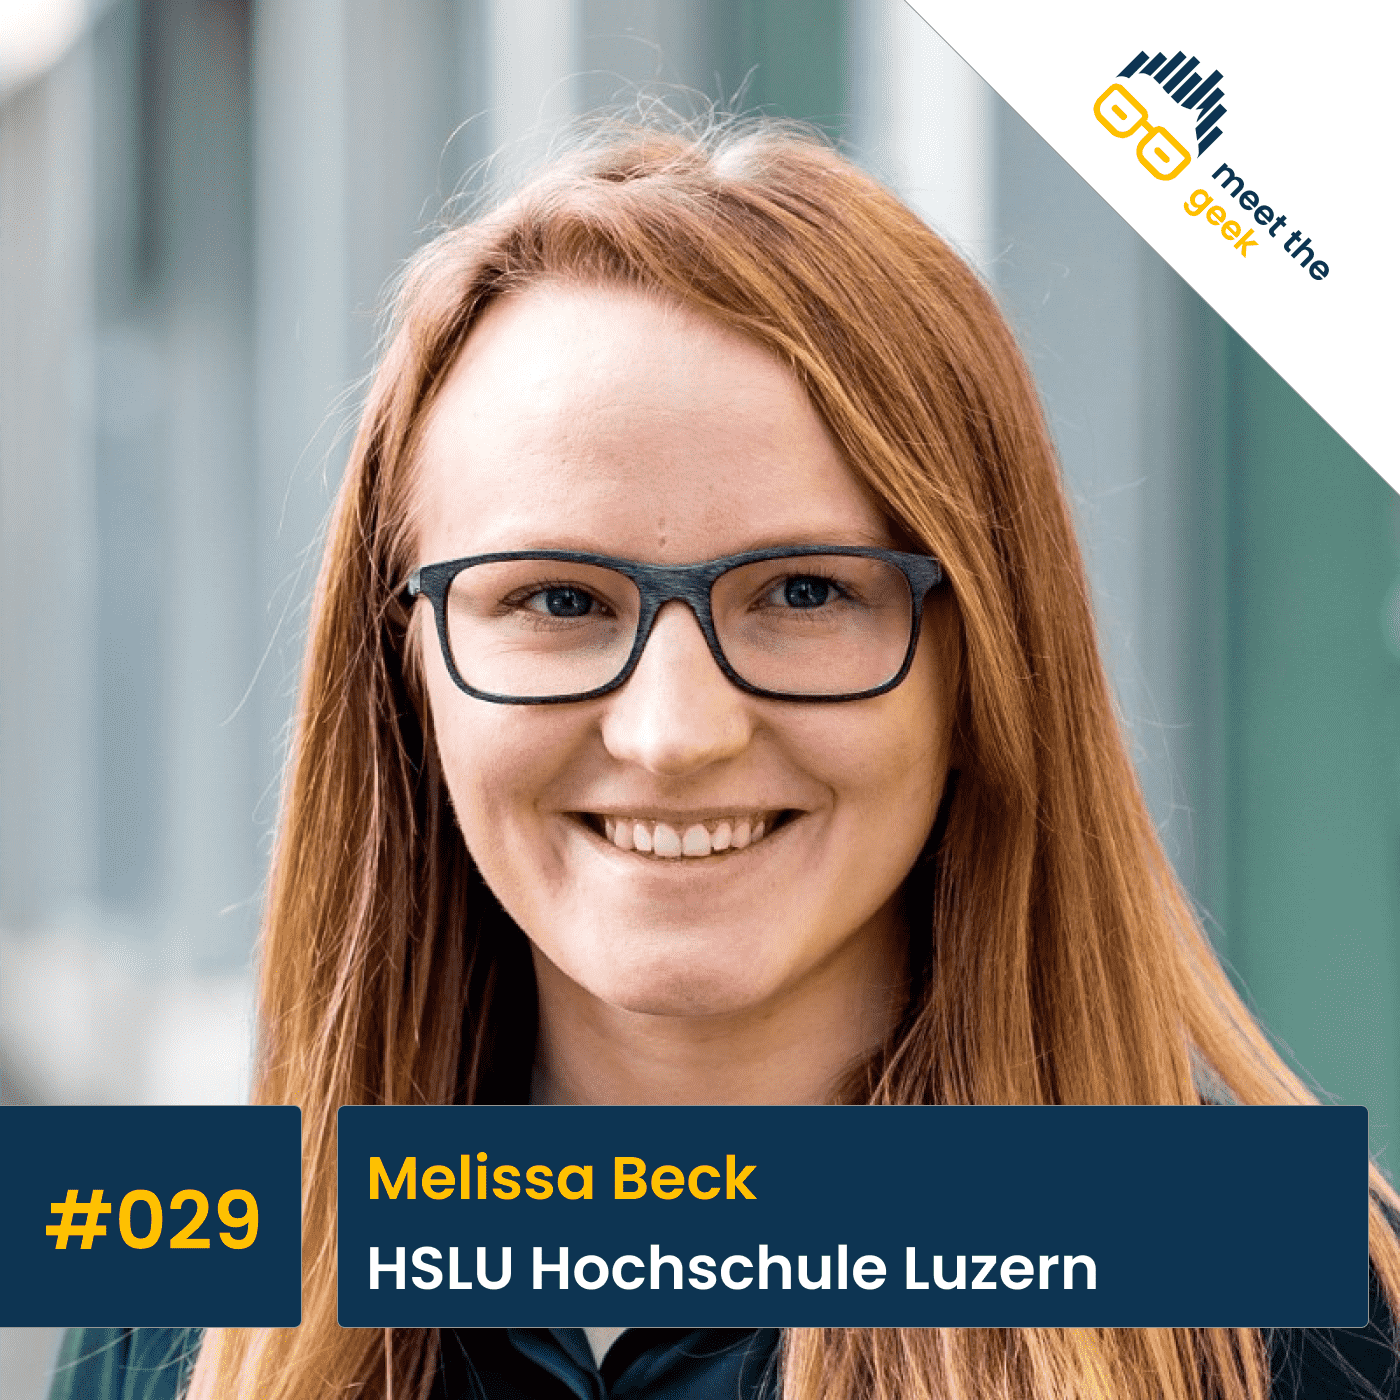 #029 Melissa Beck, HSLU Hochschule Luzern